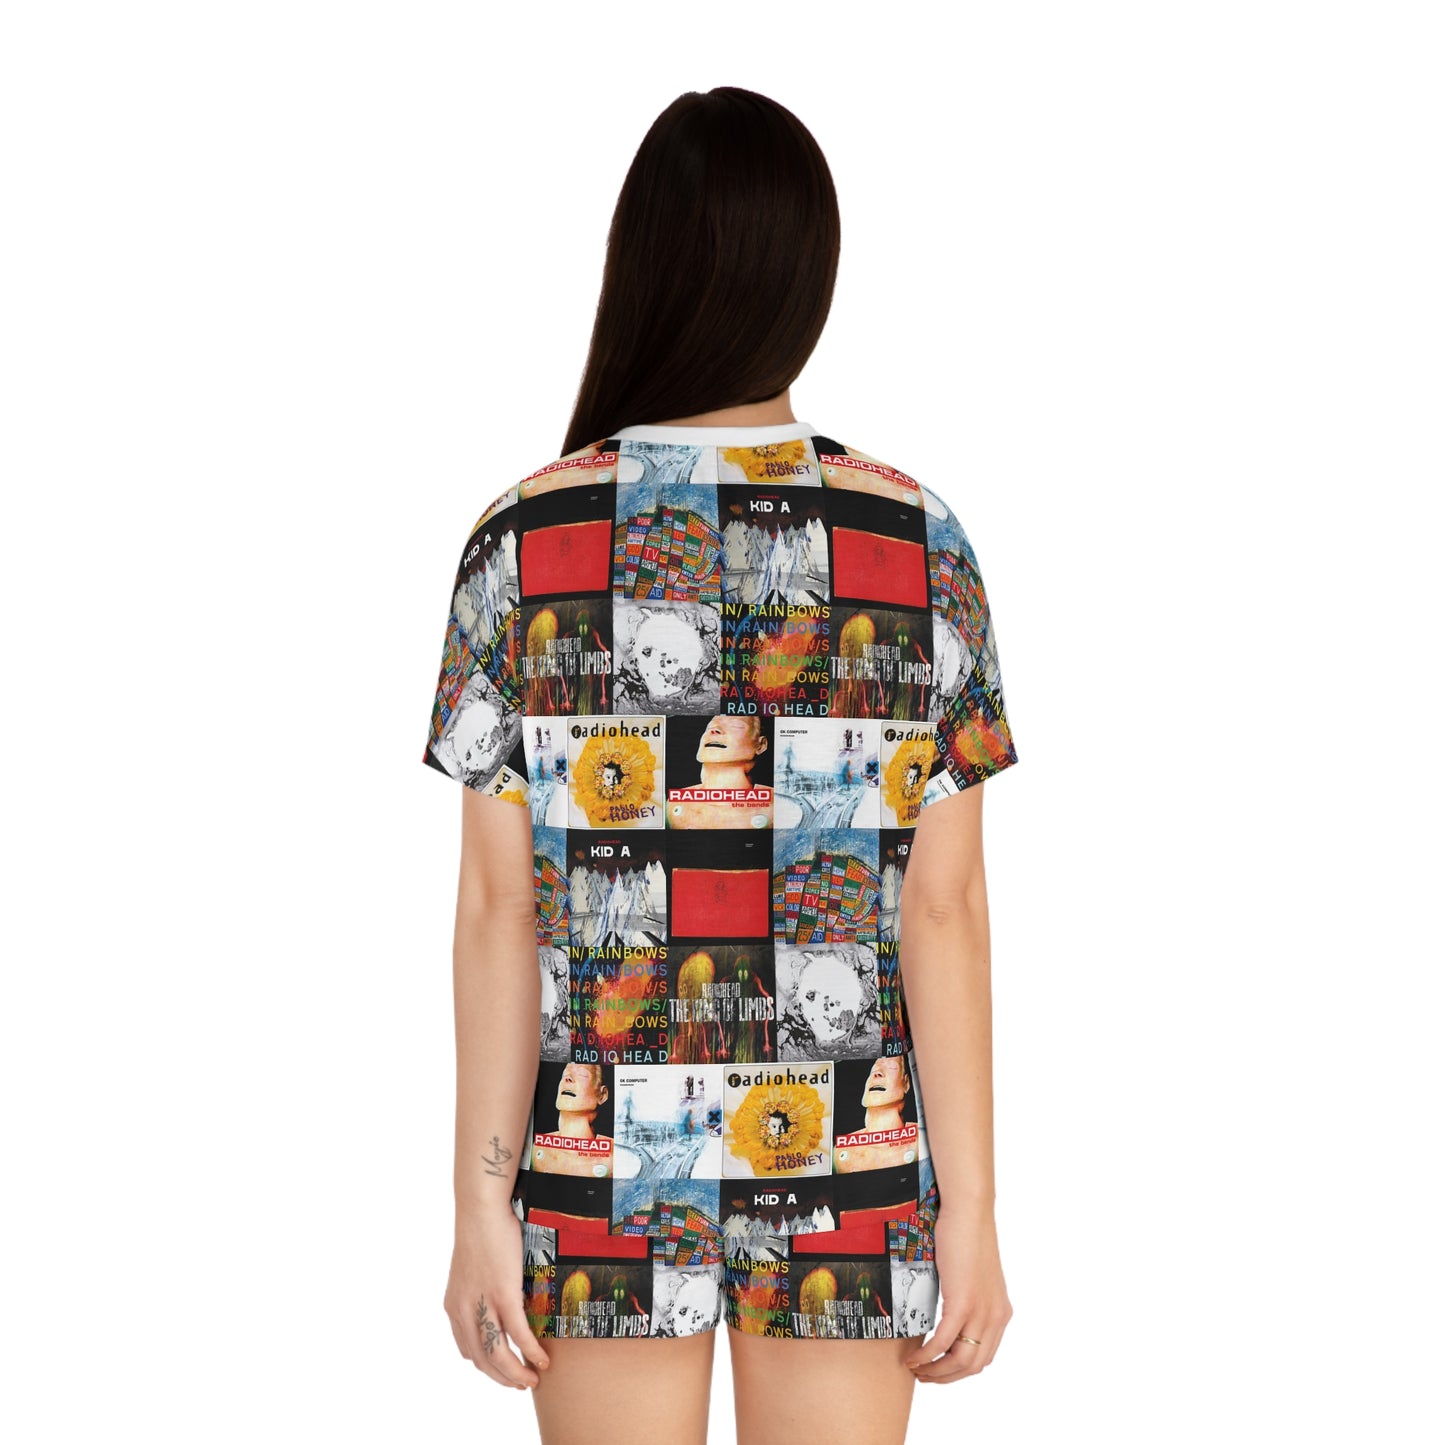 Radiohead Album Cover Collage Women's Short Pajama Set